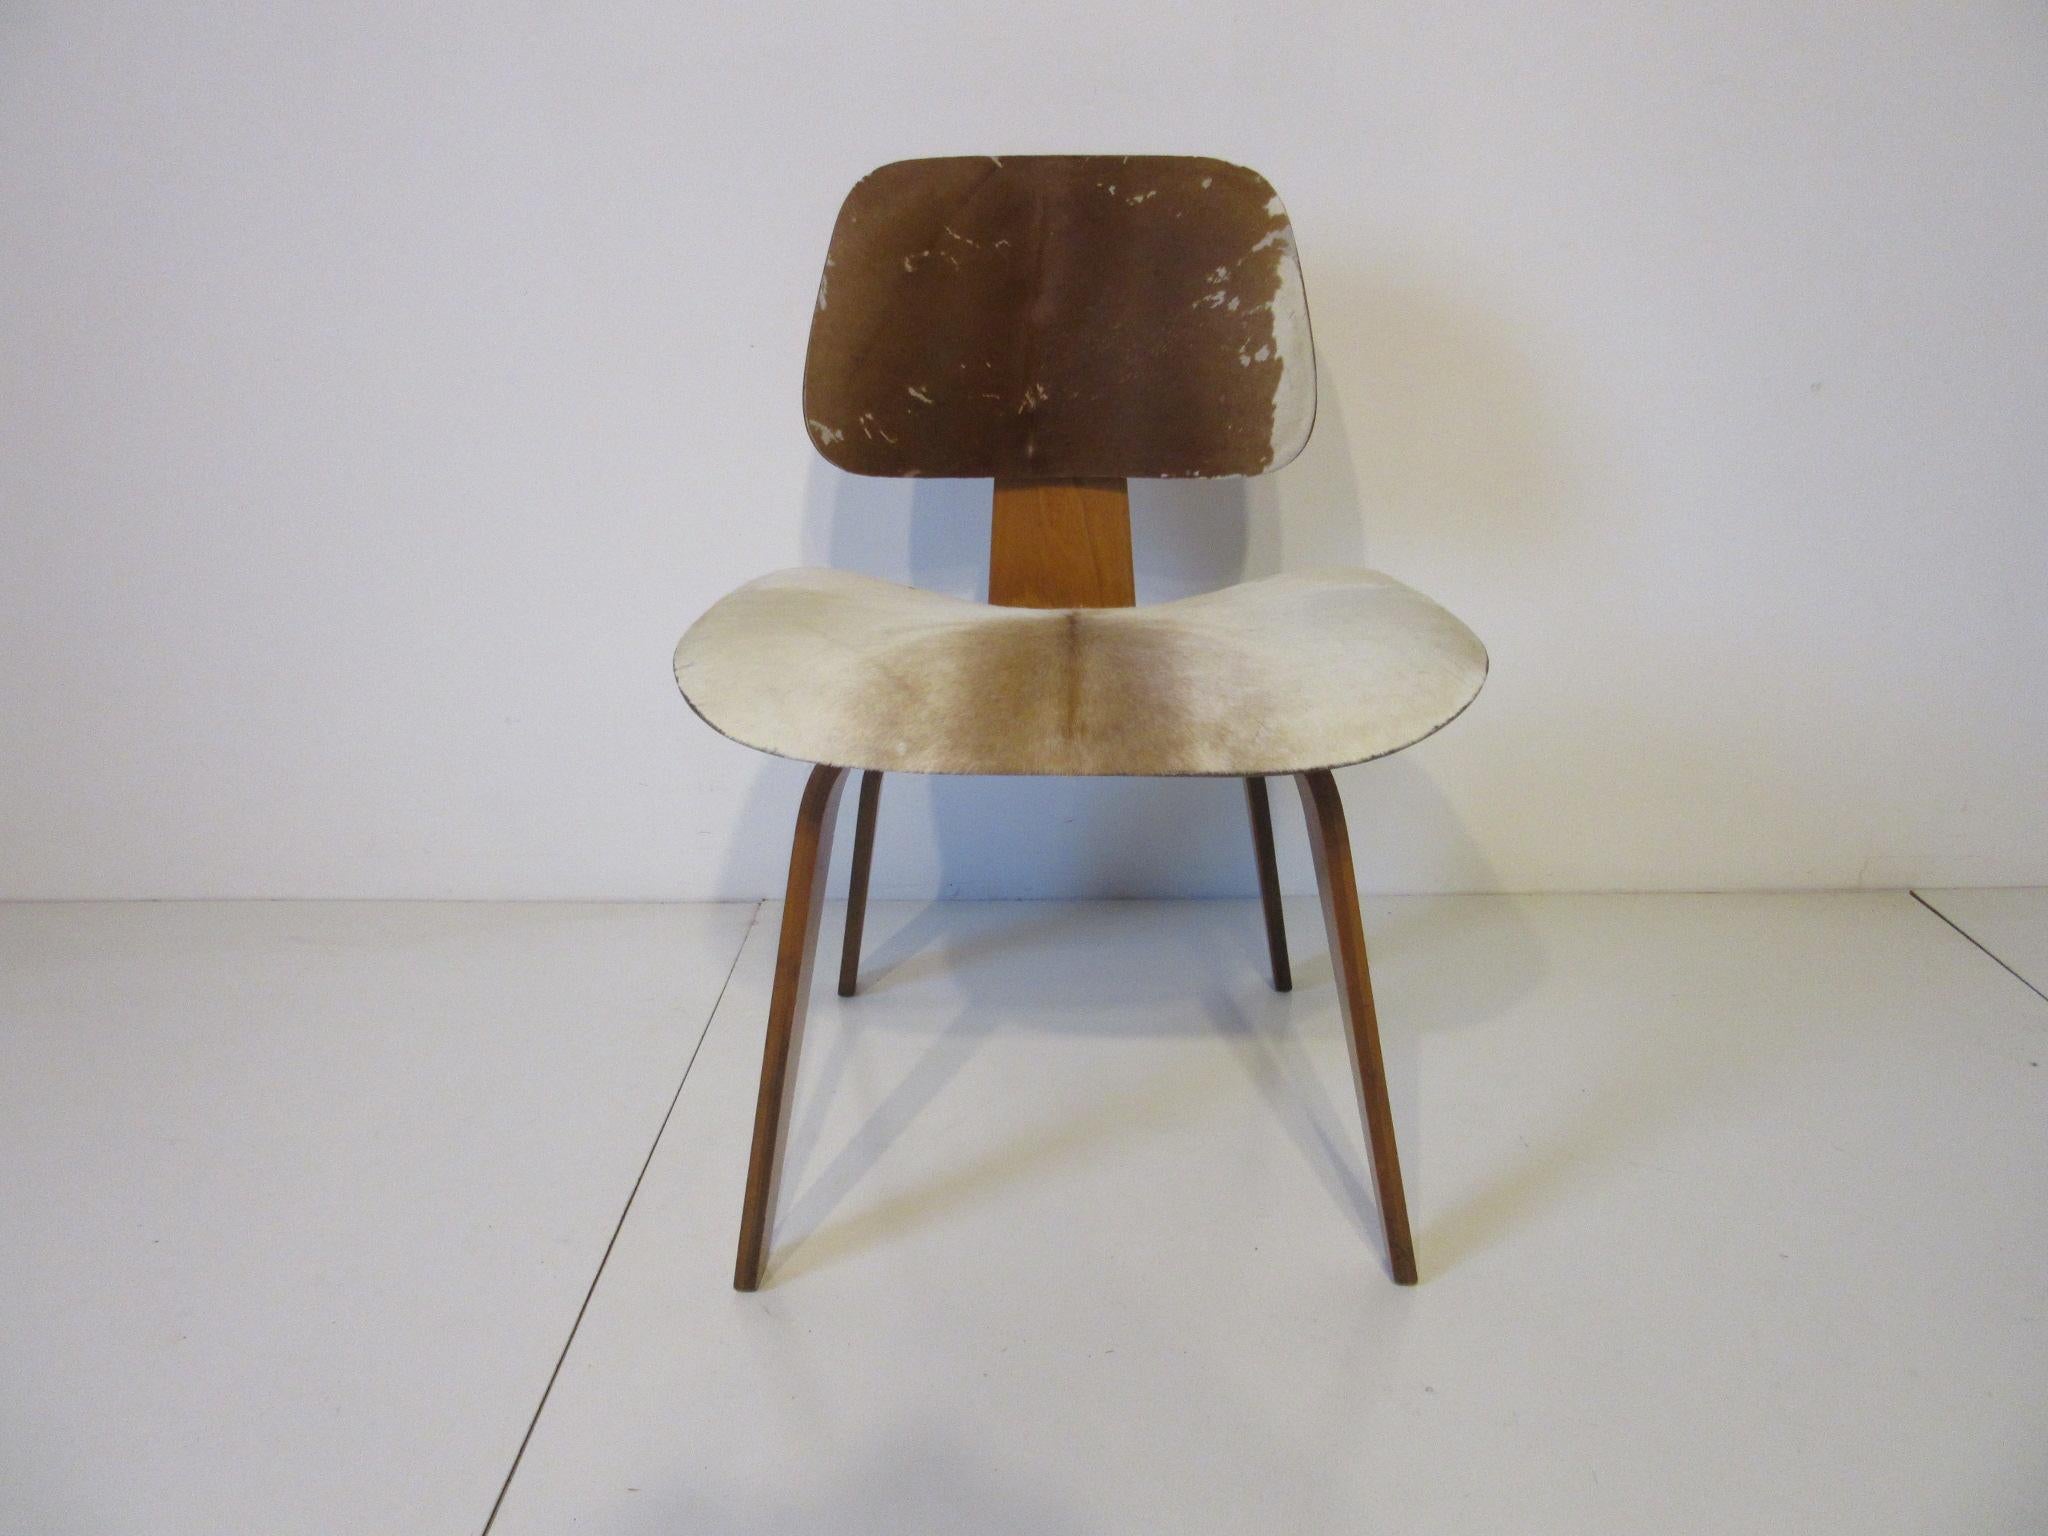 Une structure en contreplaqué de frêne moulé DCW (dining chair wood) avec une assise et un dossier tapissés de peau de chagrin. Produites entre 1948 et 1953 et dotées de la première configuration à 12 vis à la base, ces pièces étaient un article de